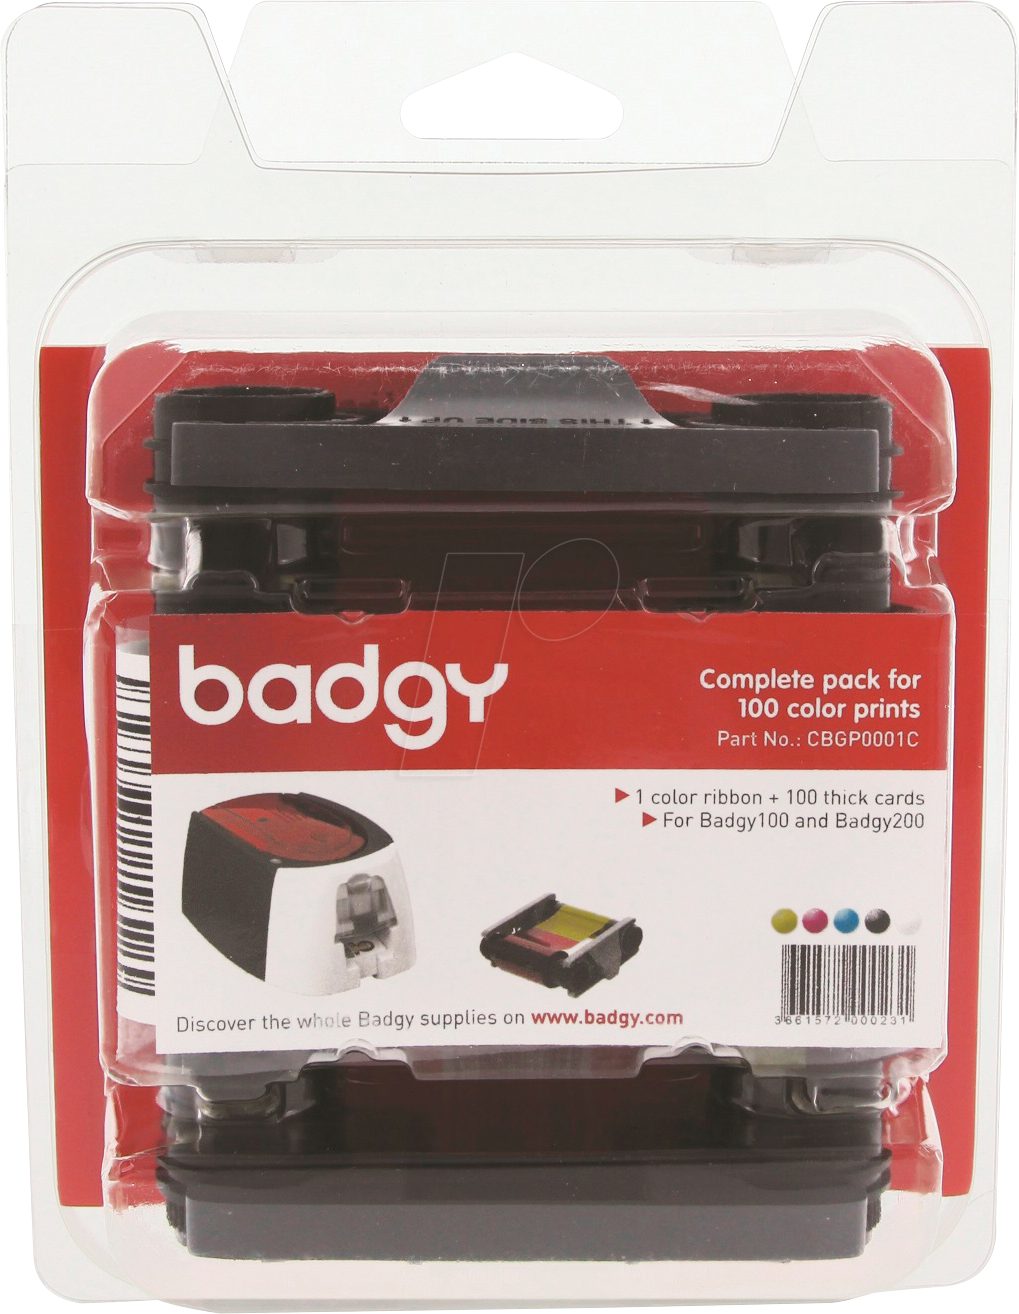 BADGY CBGP0001C - Farbbandkassette & PVC-Karten für Badgy 100 / 200 von EVOLIS